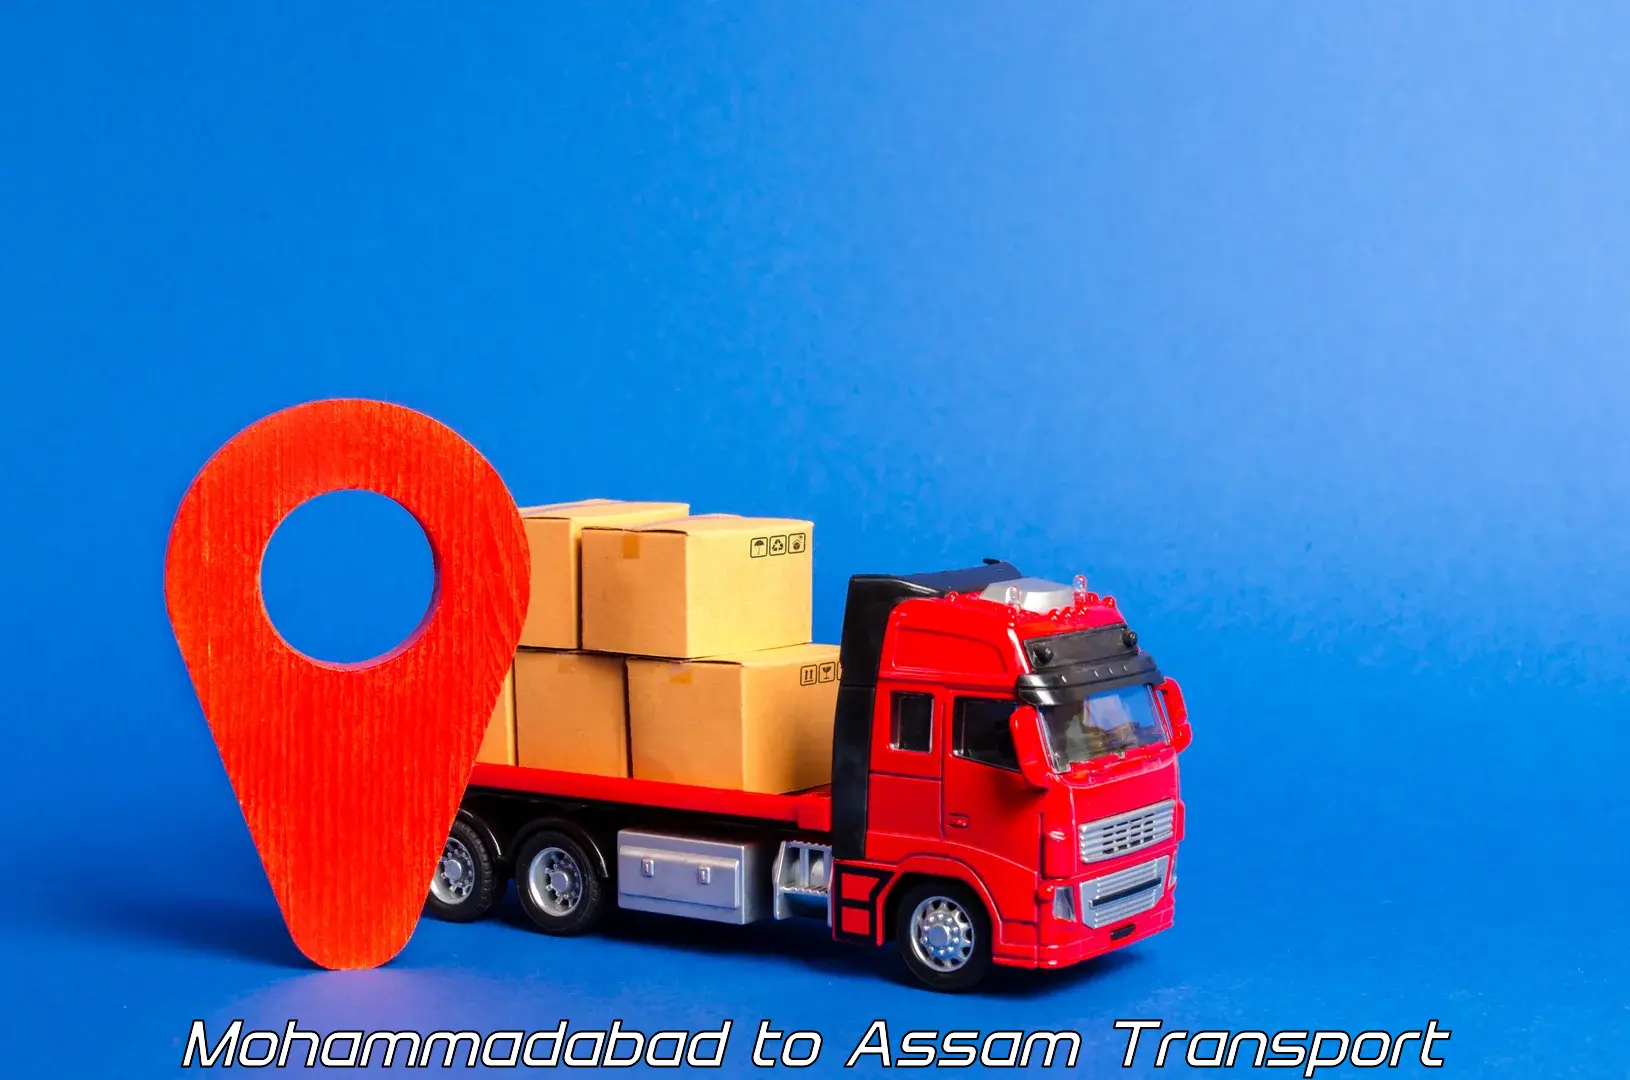 Daily parcel service transport Mohammadabad to Sivasagar